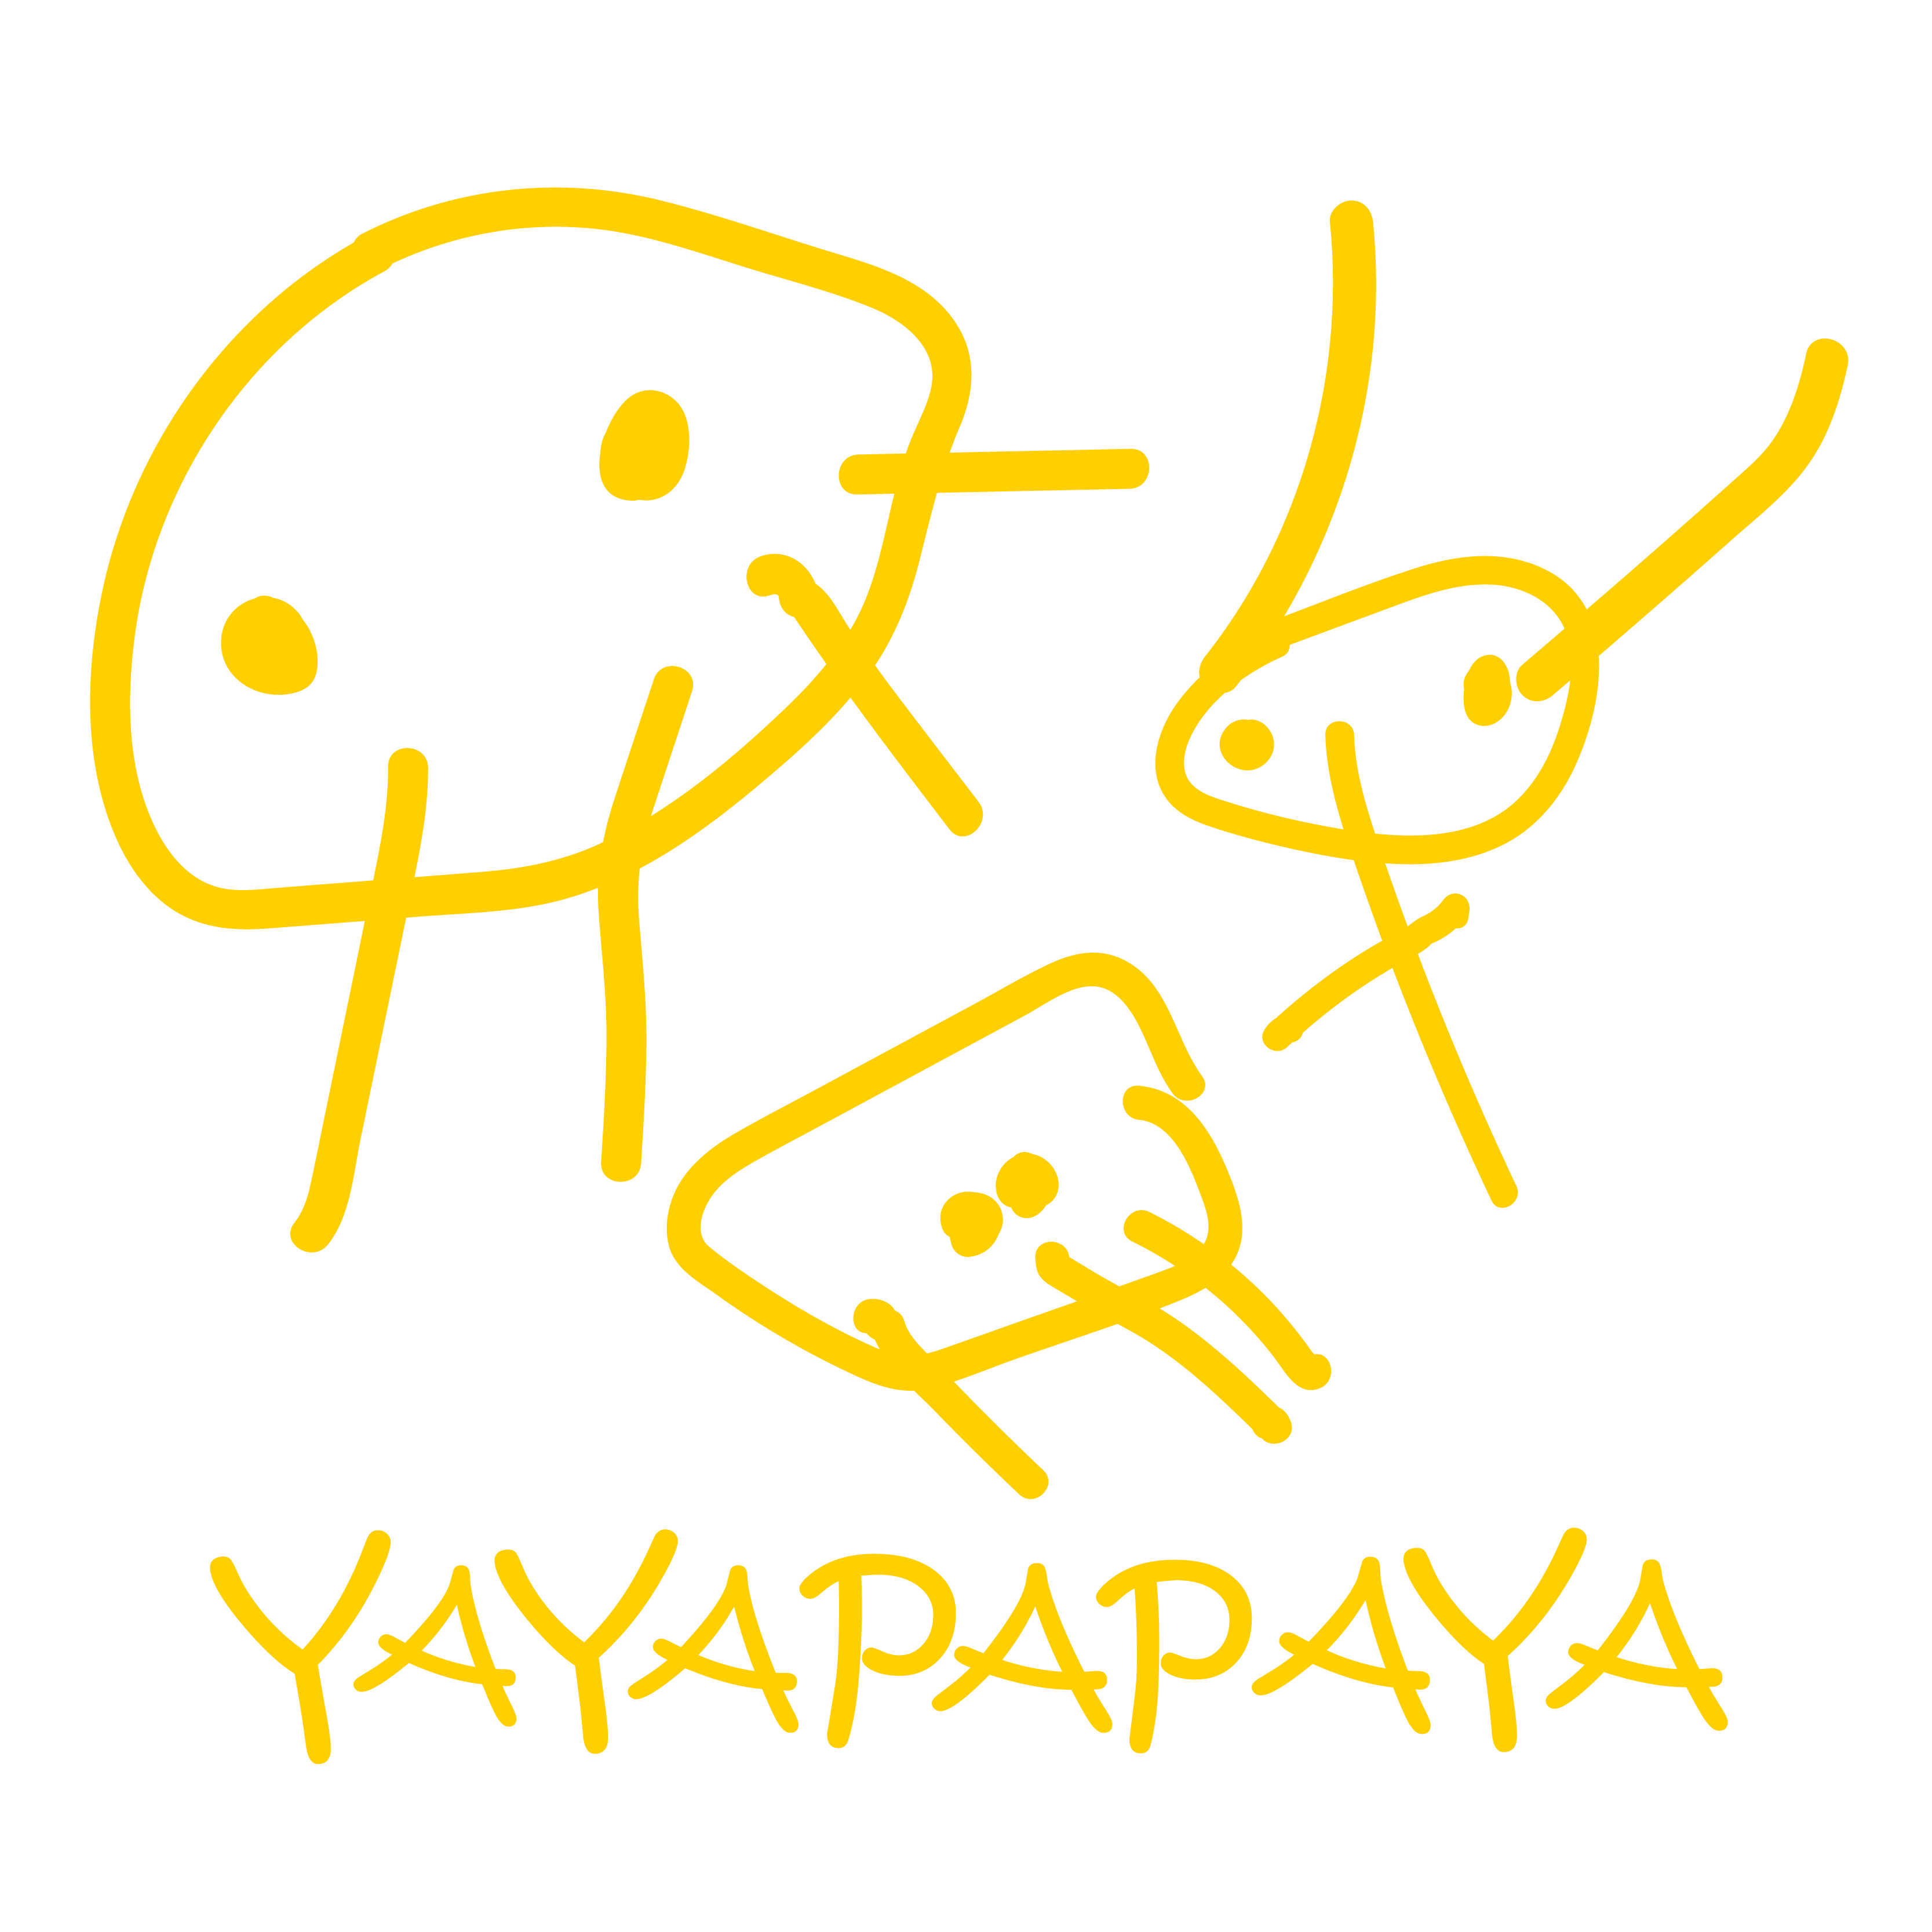 Yayapapaya Creative